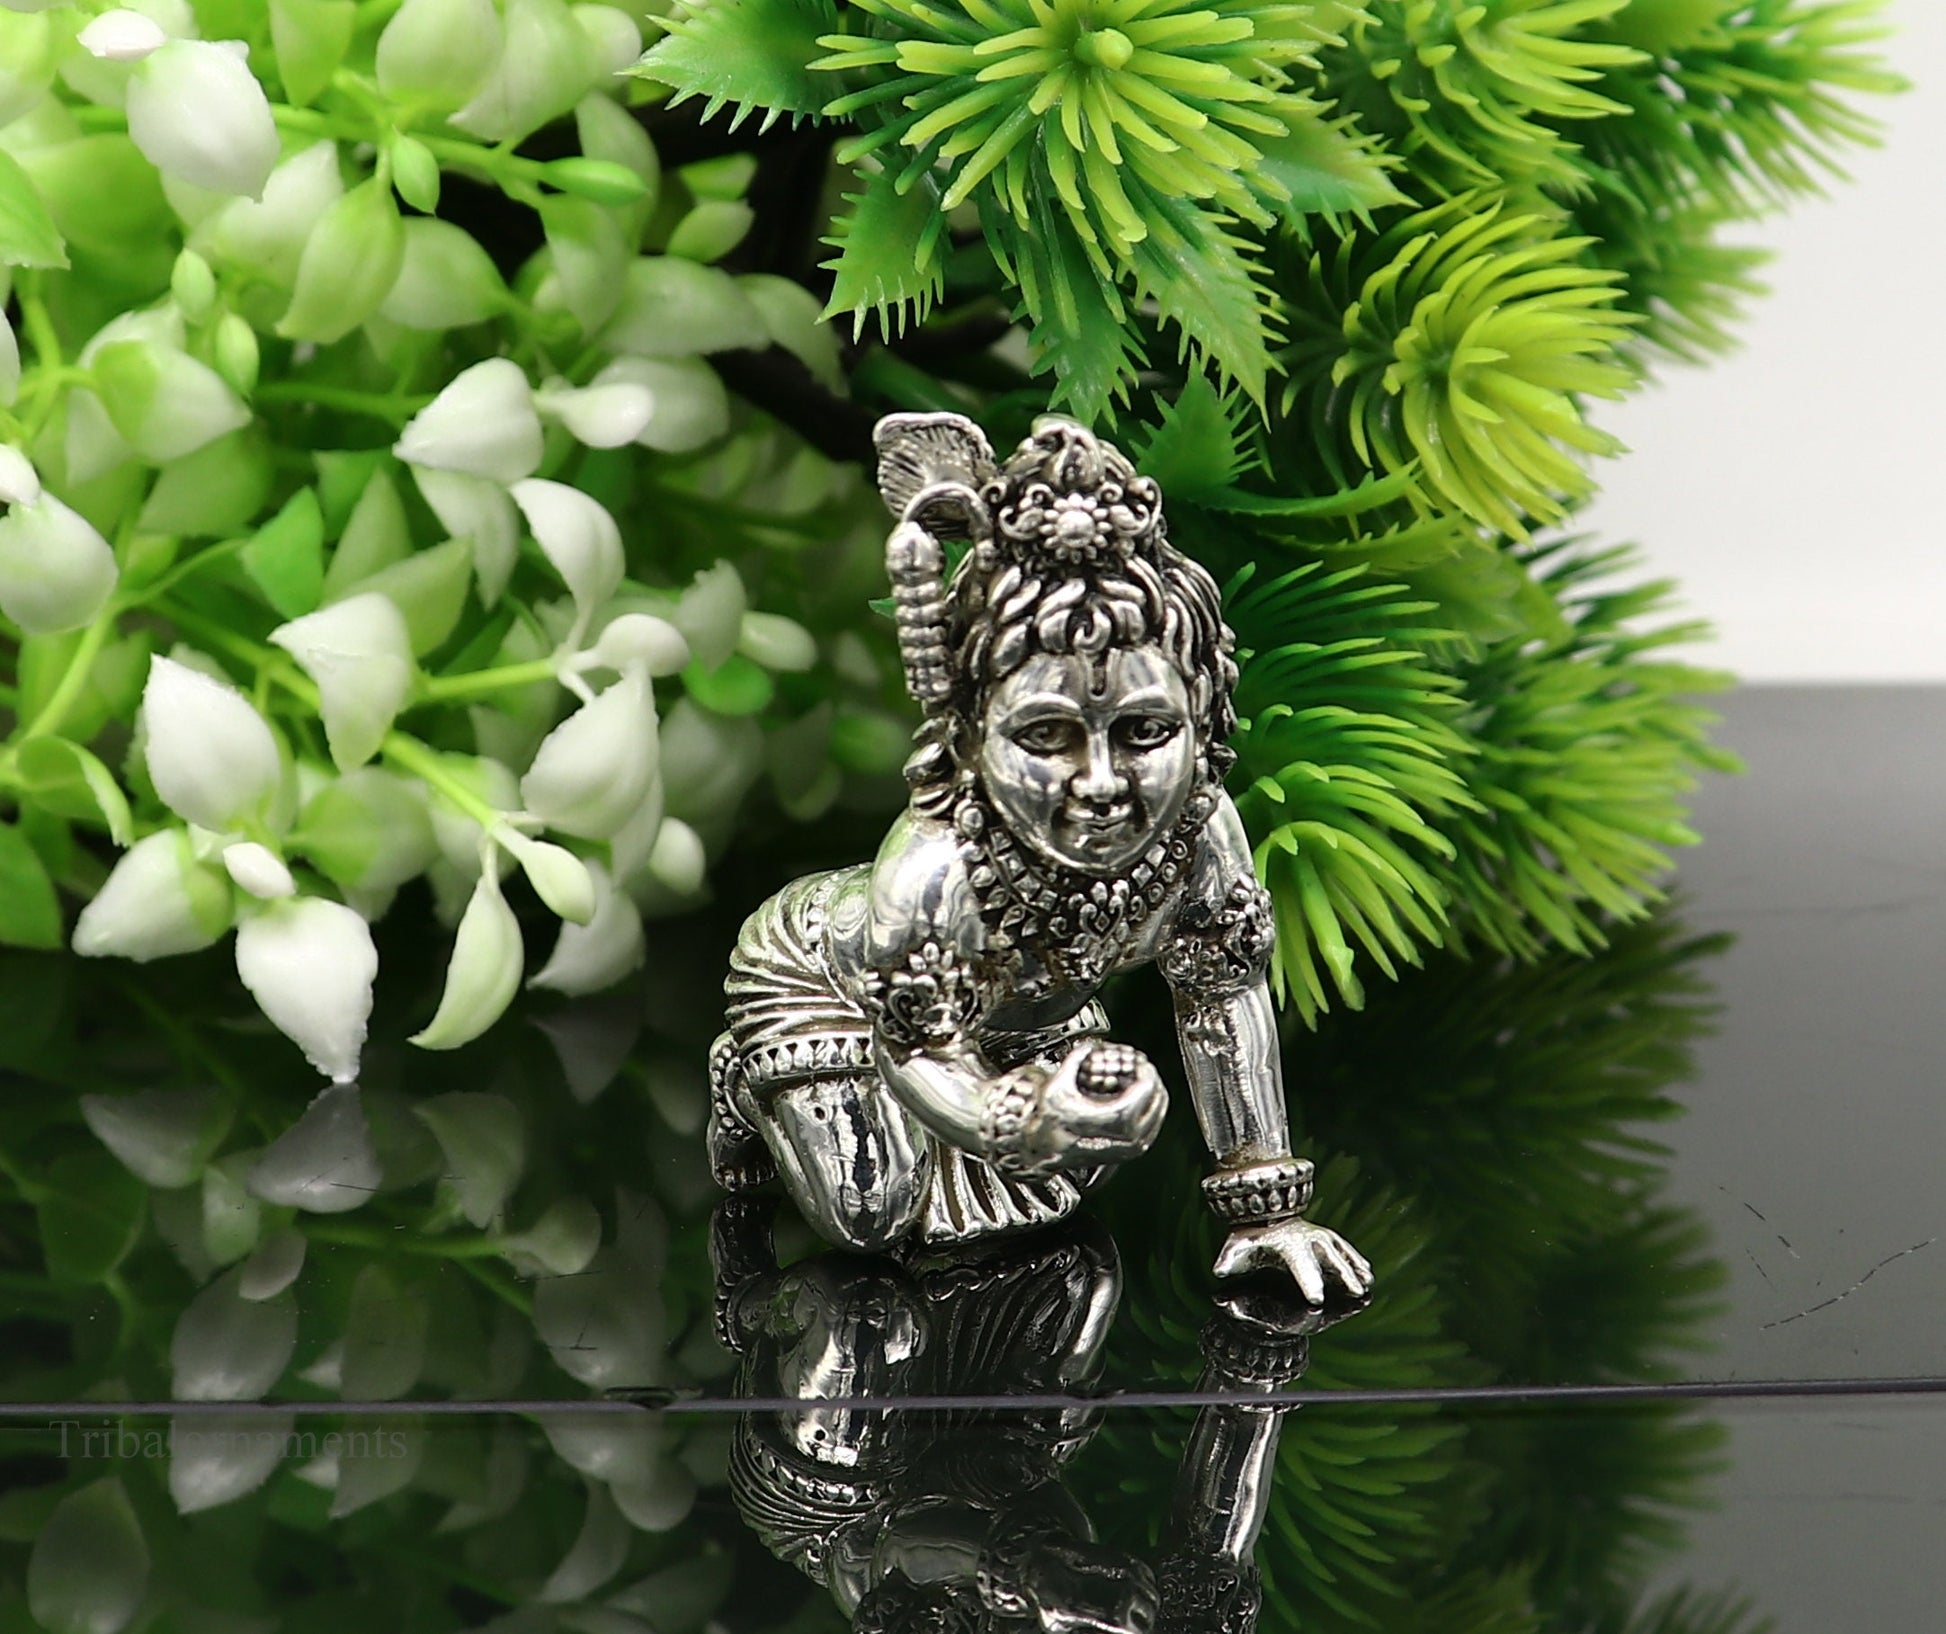 925 silver handmade customized idol little krishna, Ladu Gopal,crawling Krishna small statue sculpture home temple puja art, utensils art123 - TRIBAL ORNAMENTS